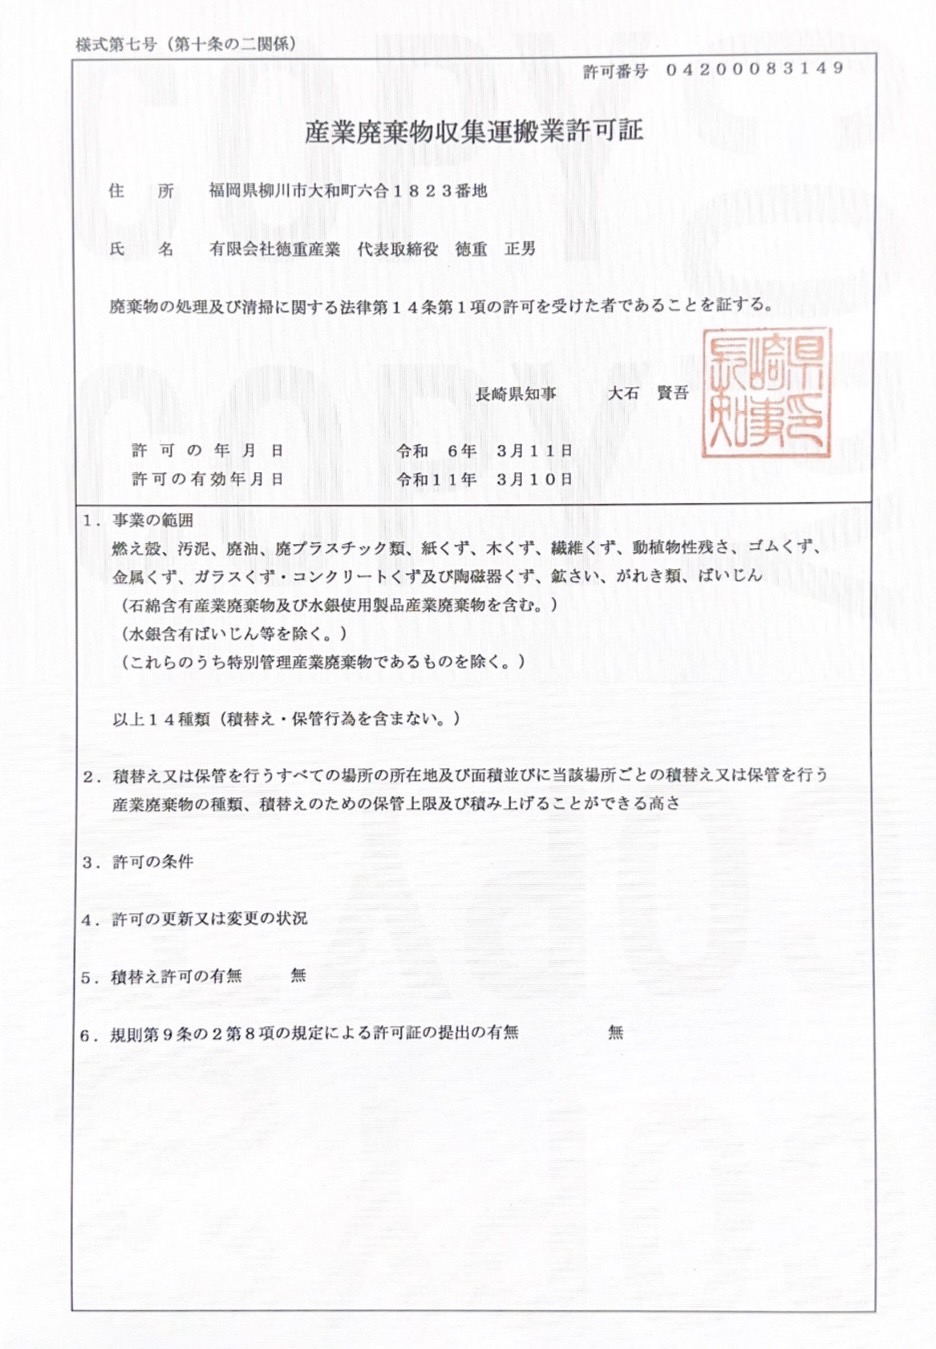 産業廃棄物収集運搬業許可証(熊本)